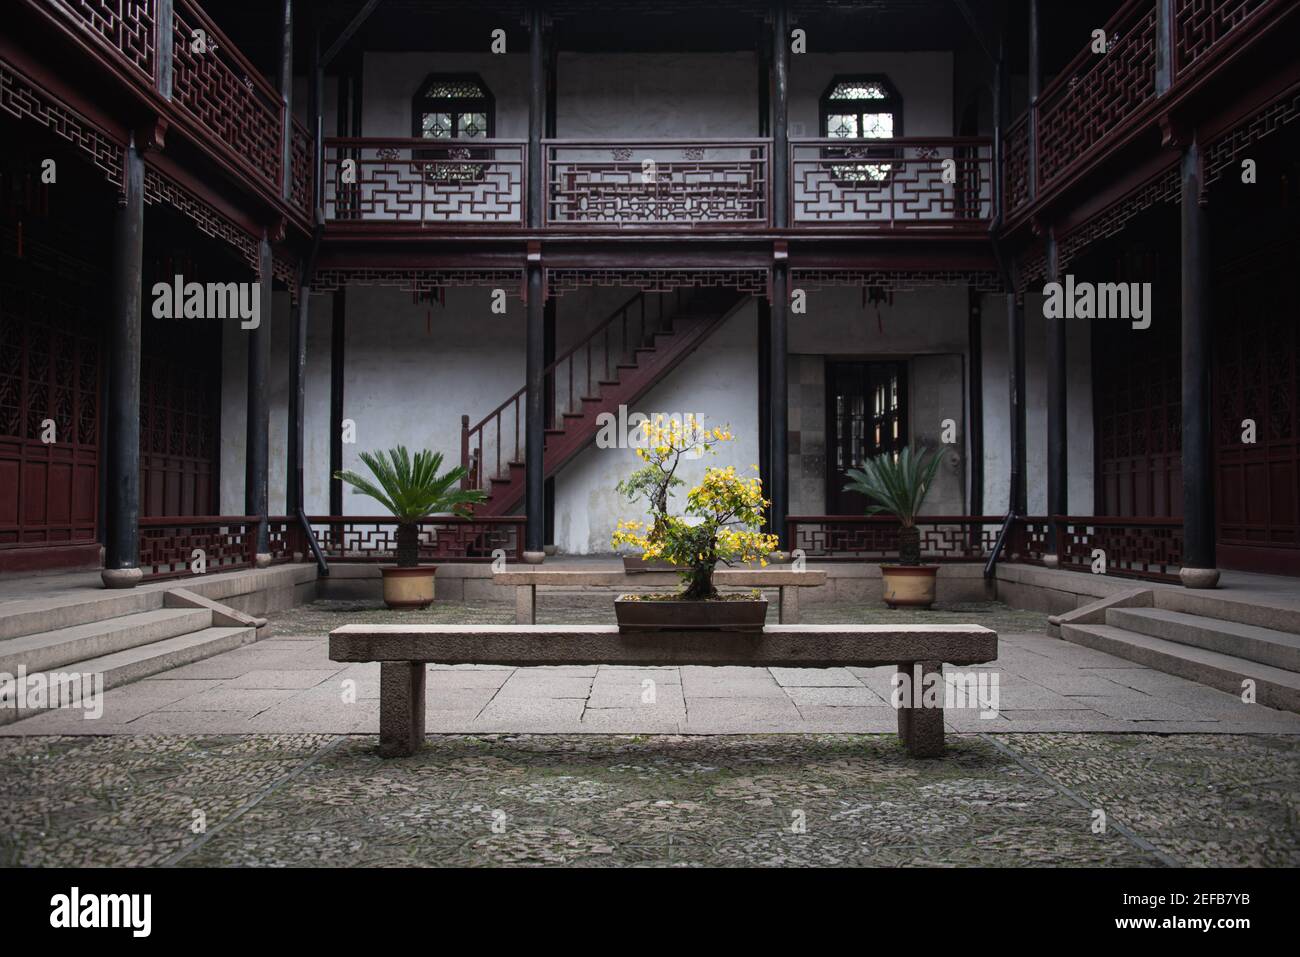 Jardin de retraite et de réflexion (jardin de TuiSi) Est un jardin classique en Chine.situé à Tongli,Jiangsu,Chine.il a été construit en 1885, il a été reconnu comme un Banque D'Images